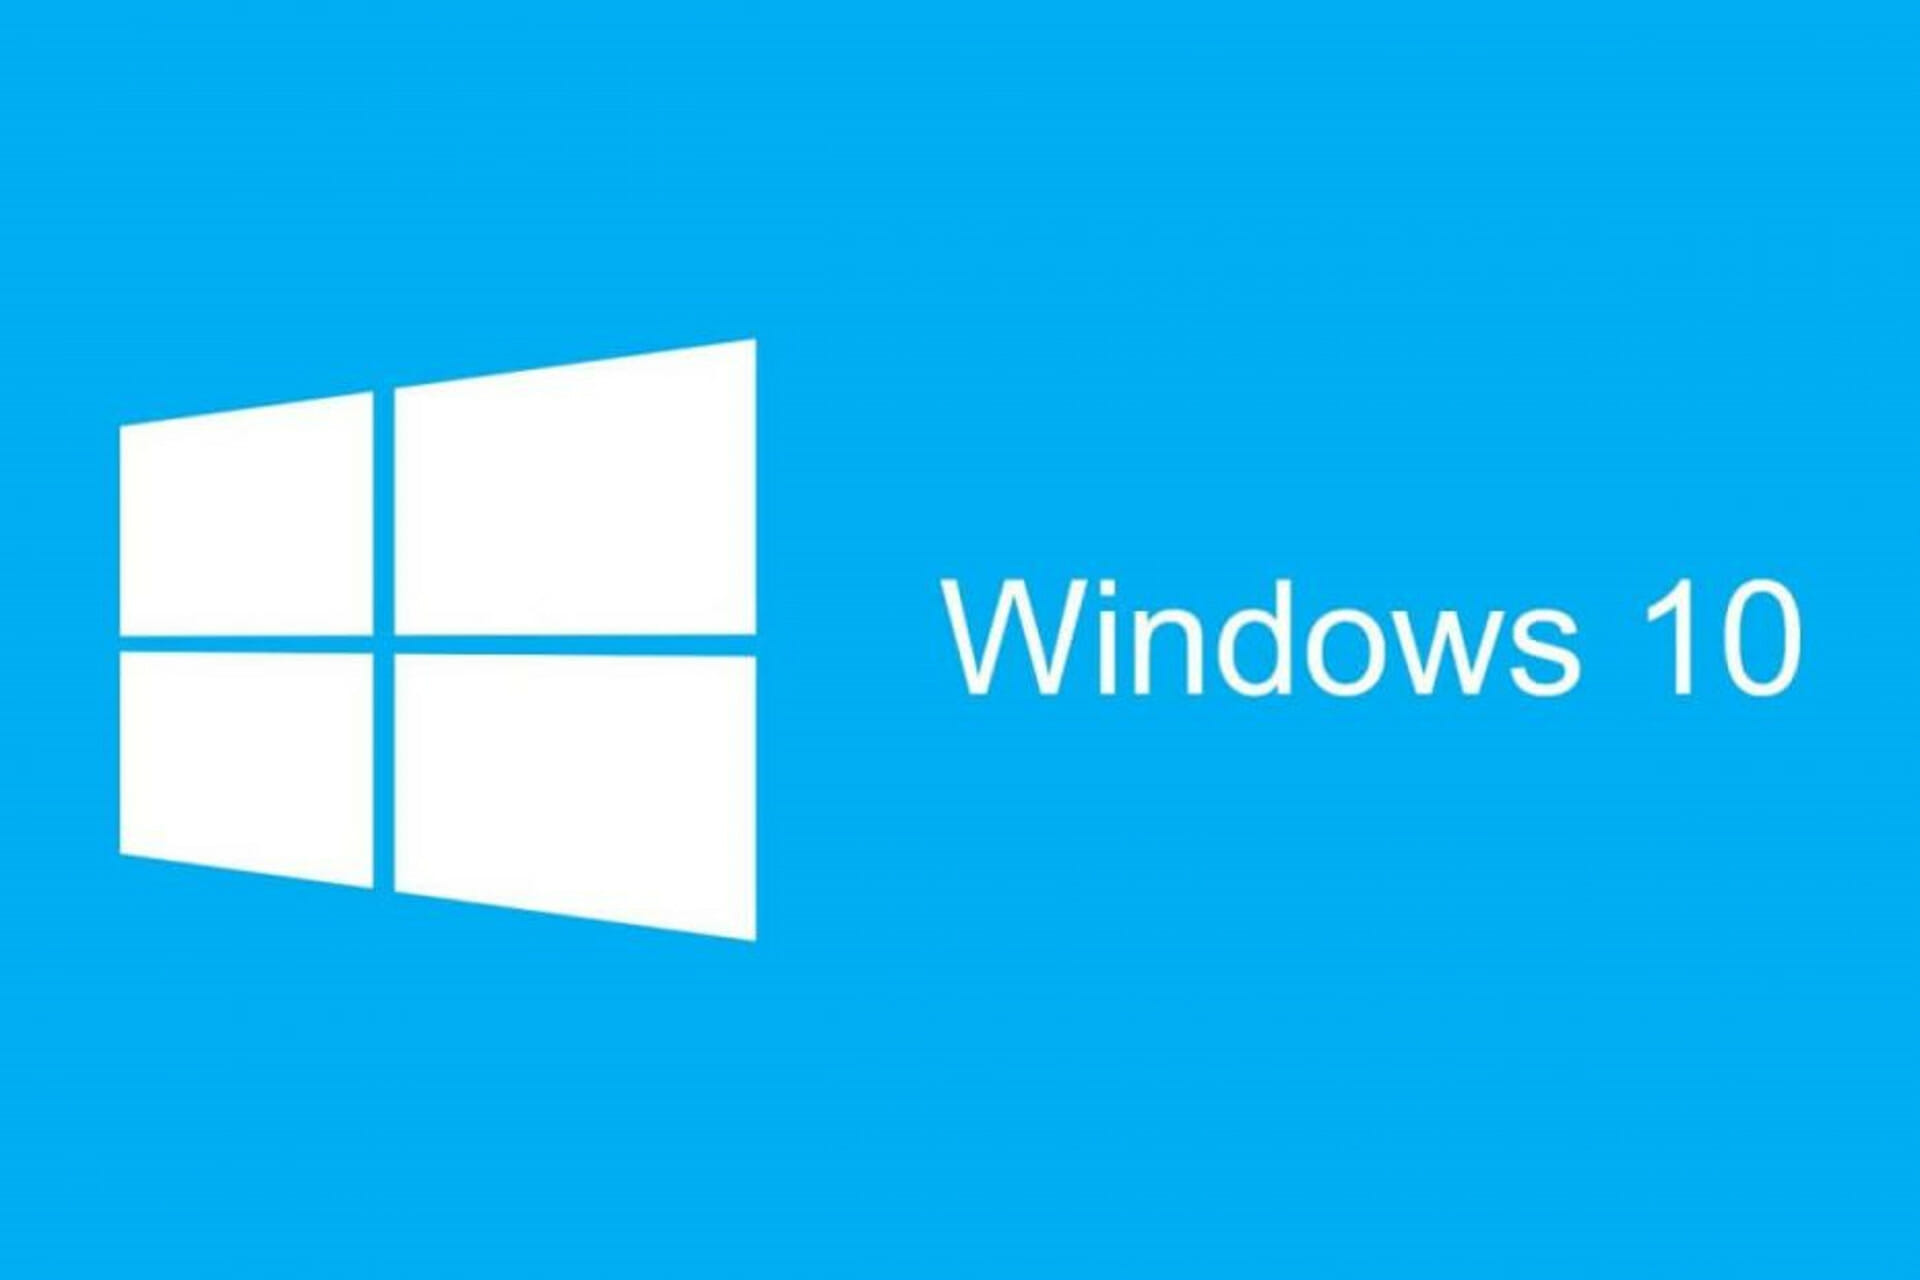 KB4103727 interrumpe las conexiones de escritorio remoto en Windows 10